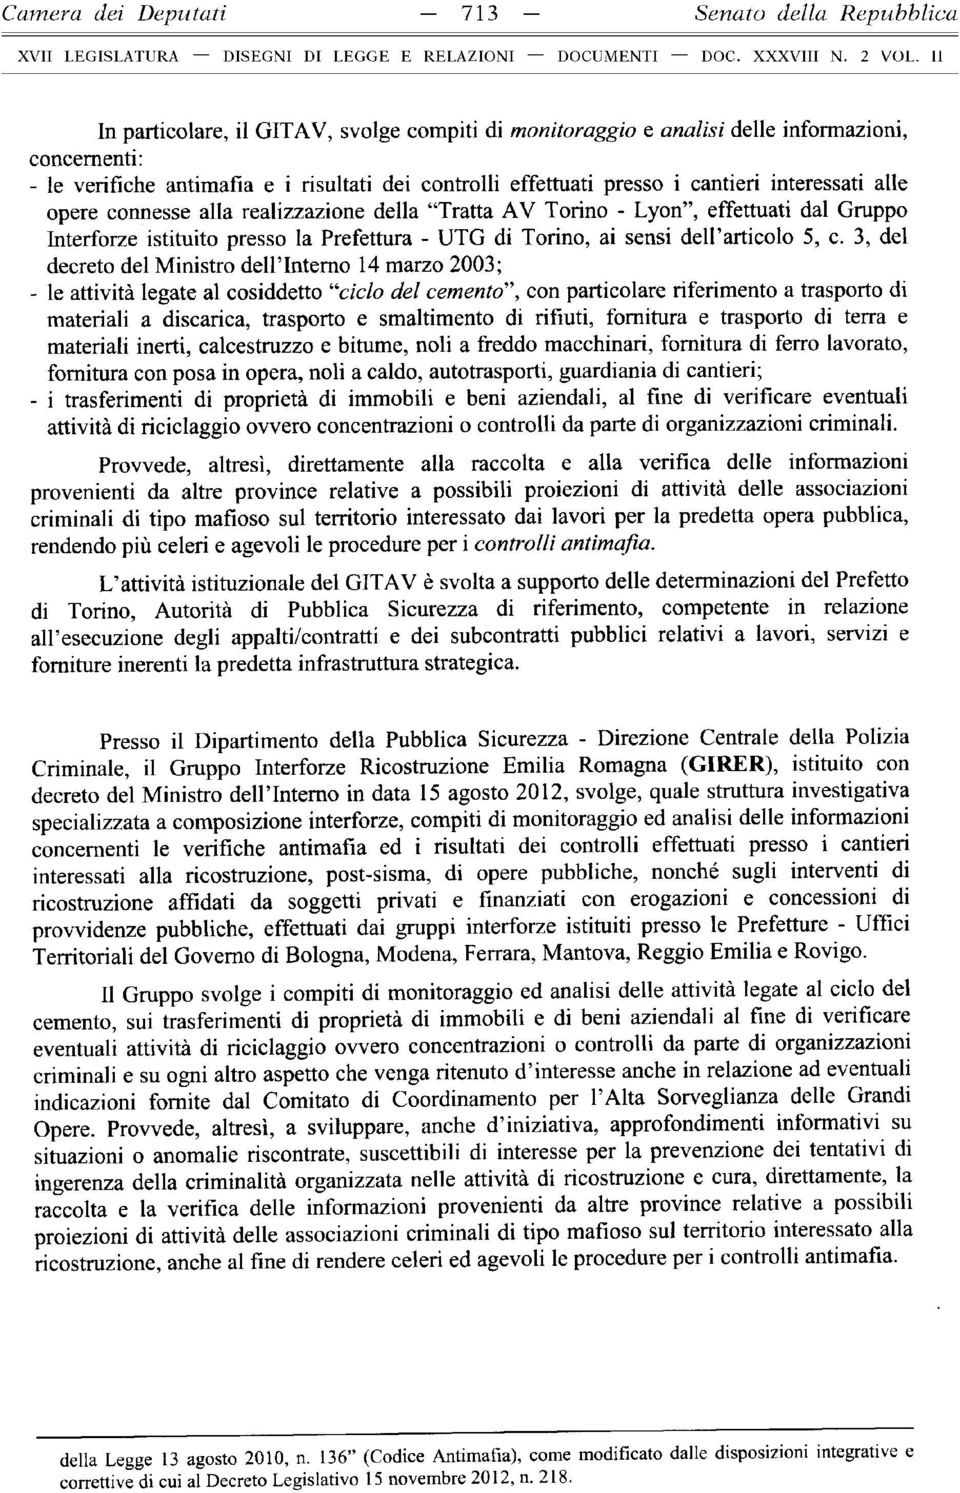 alle opere connesse alla realizzazione della Tratta AV Torino - Lyon, effettuati dal Gruppo Interforze istituito presso la Prefettura - UTG di Torino, ai sensi dell articolo 5, c.